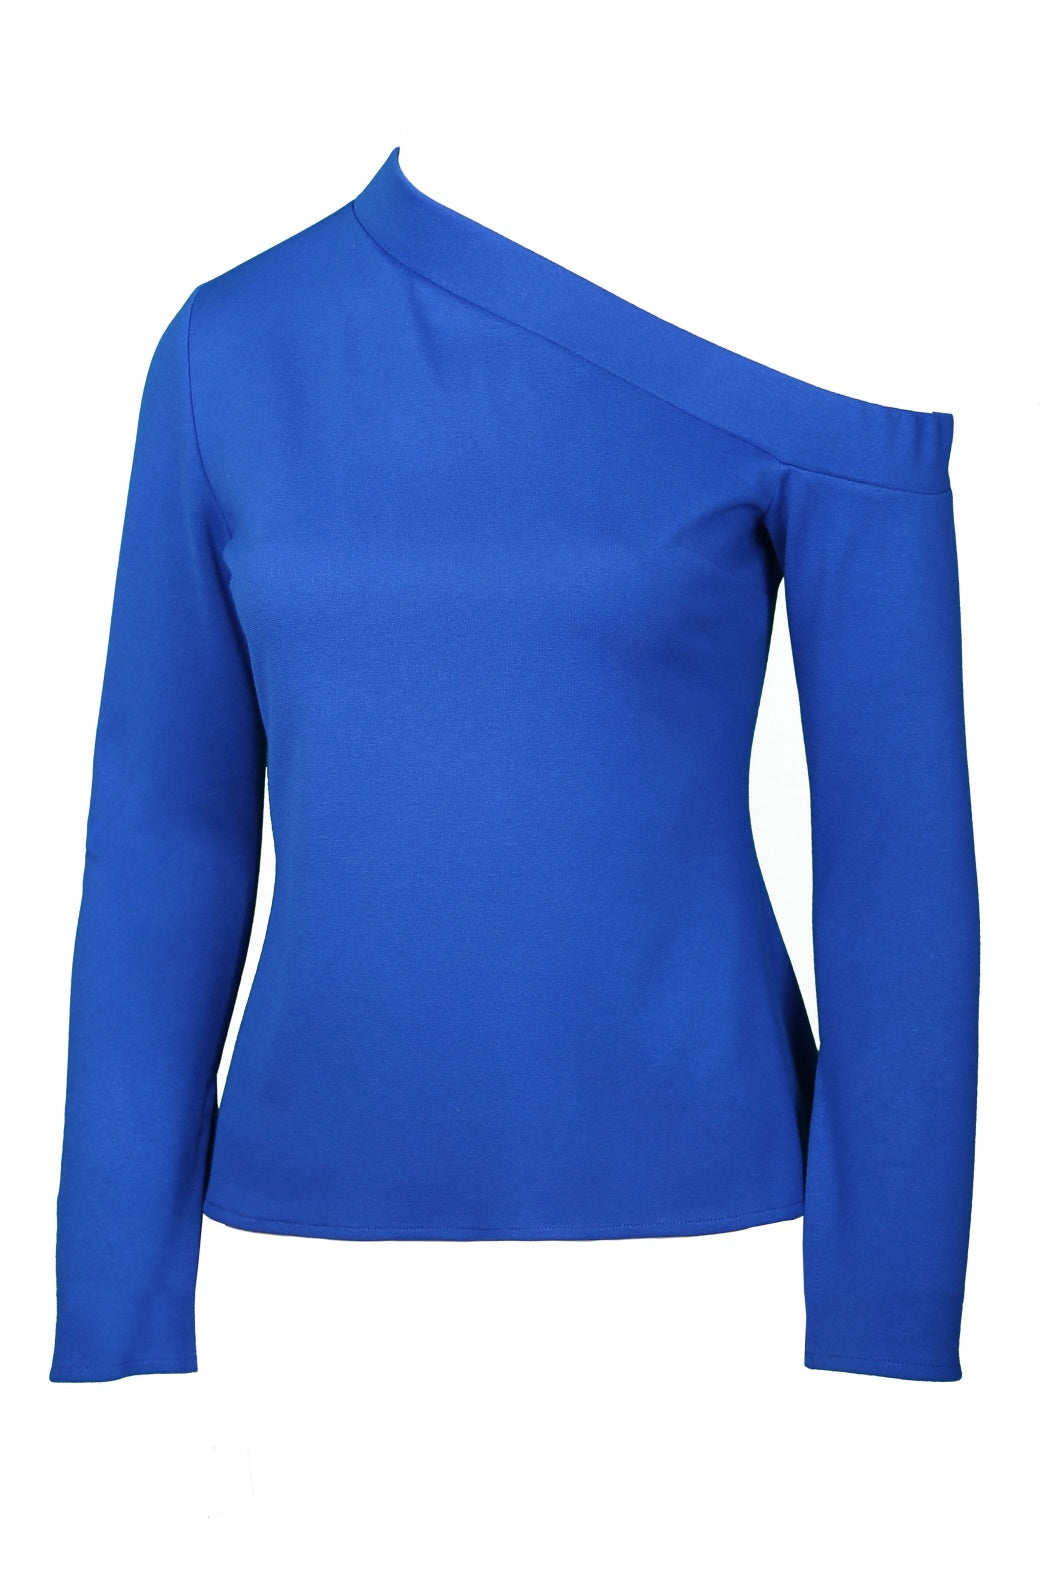 Niki Sax Blue One-Shoulder Knitwear Blouse